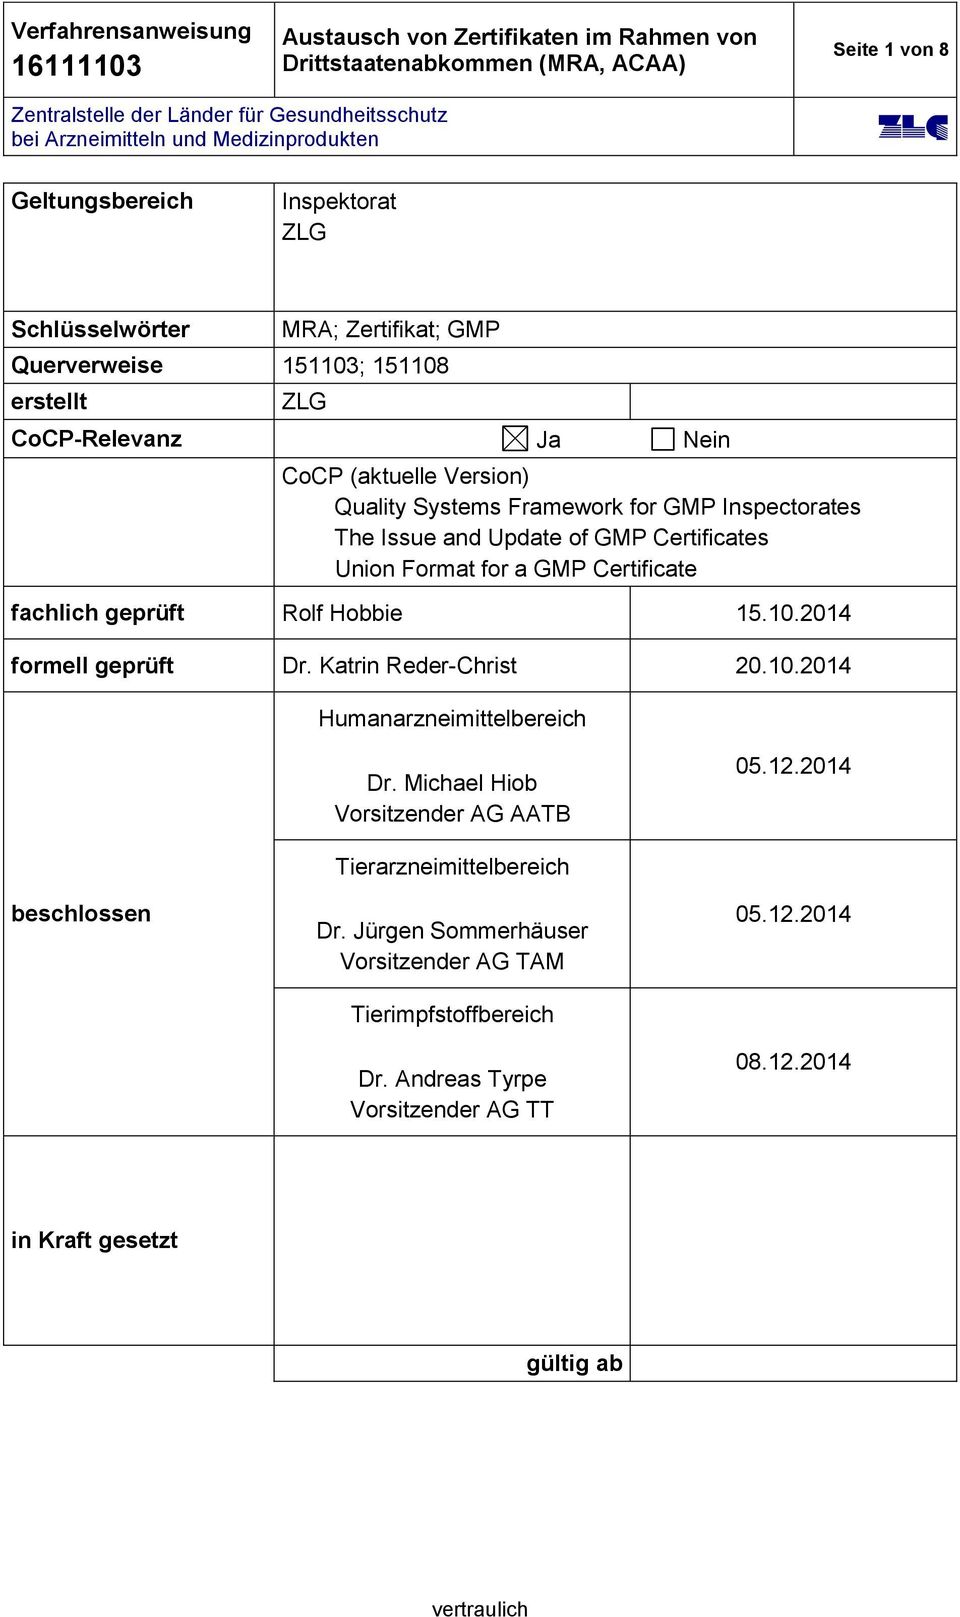 Hobbie 15.10.2014 formell geprüft Dr. Katrin Reder-Christ 20.10.2014 Humanarzneimittelbereich Dr. Michael Hiob Vorsitzender AG AATB 05.12.